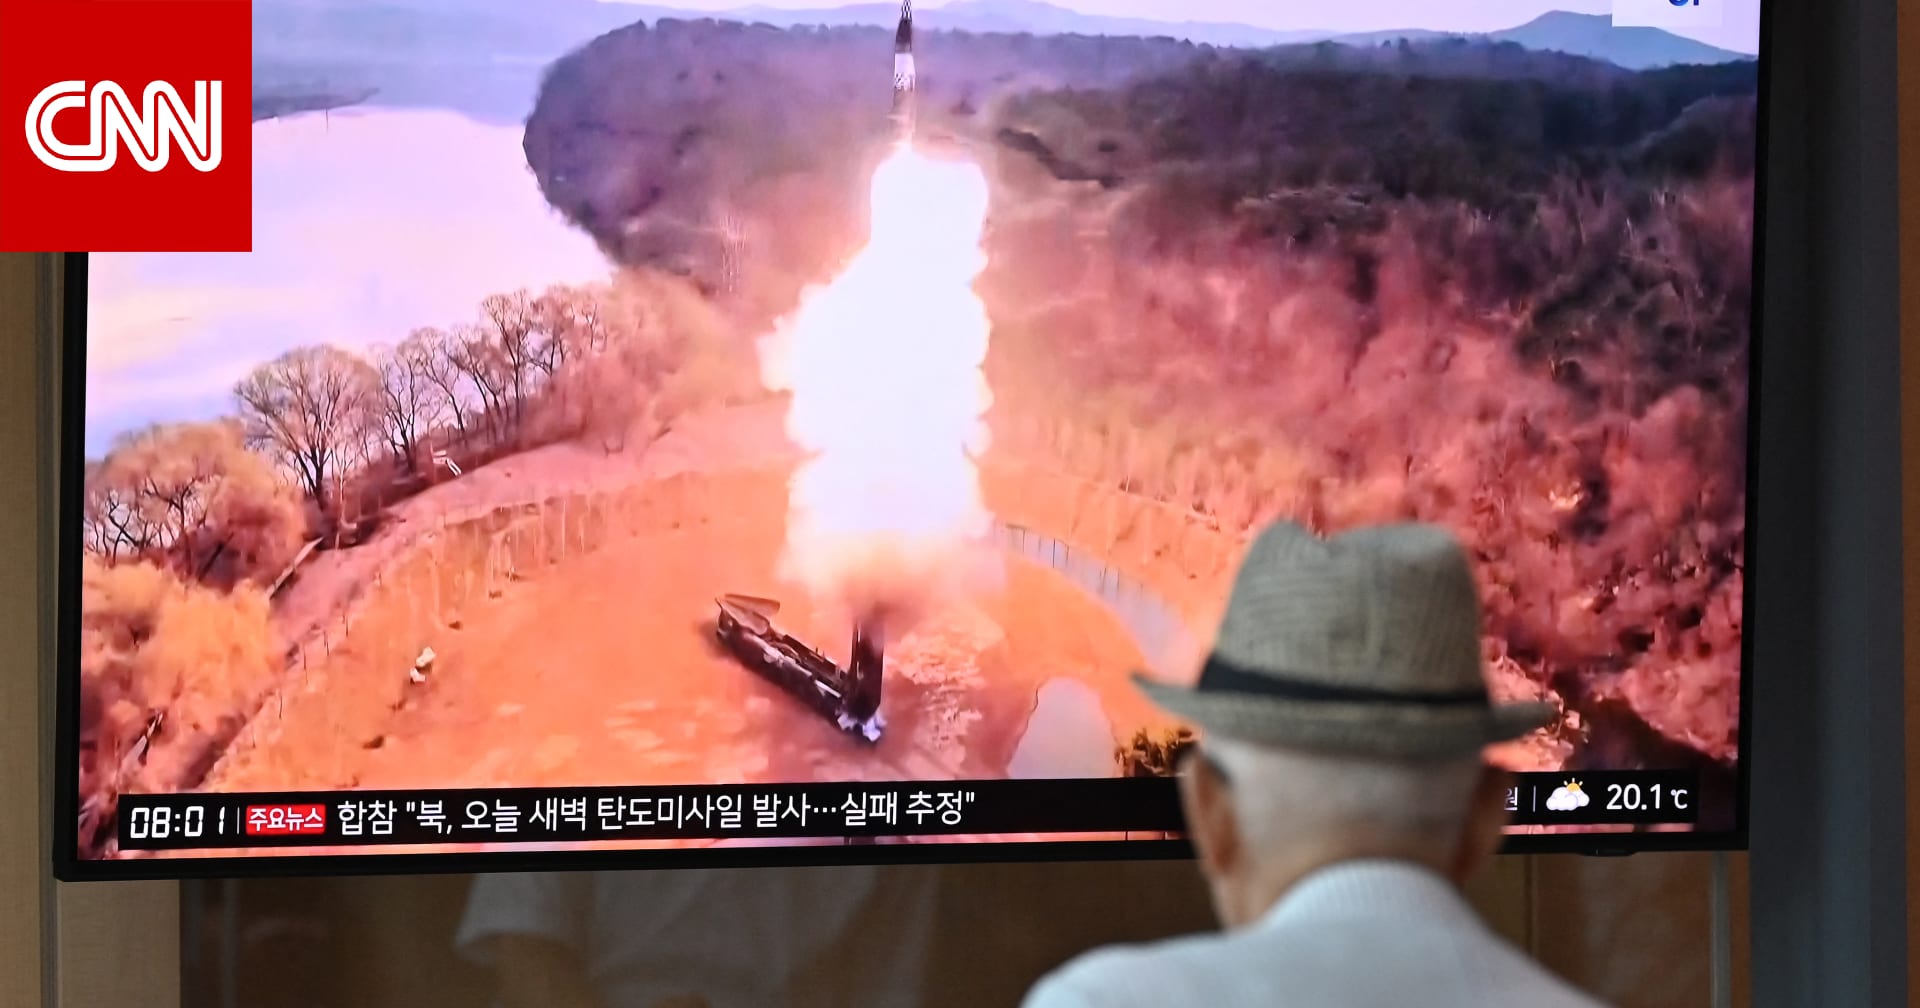 سول تلفت لتجربة صاروخية فاشلة لكوريا الشمالية وترد على مزاعم نجاحها